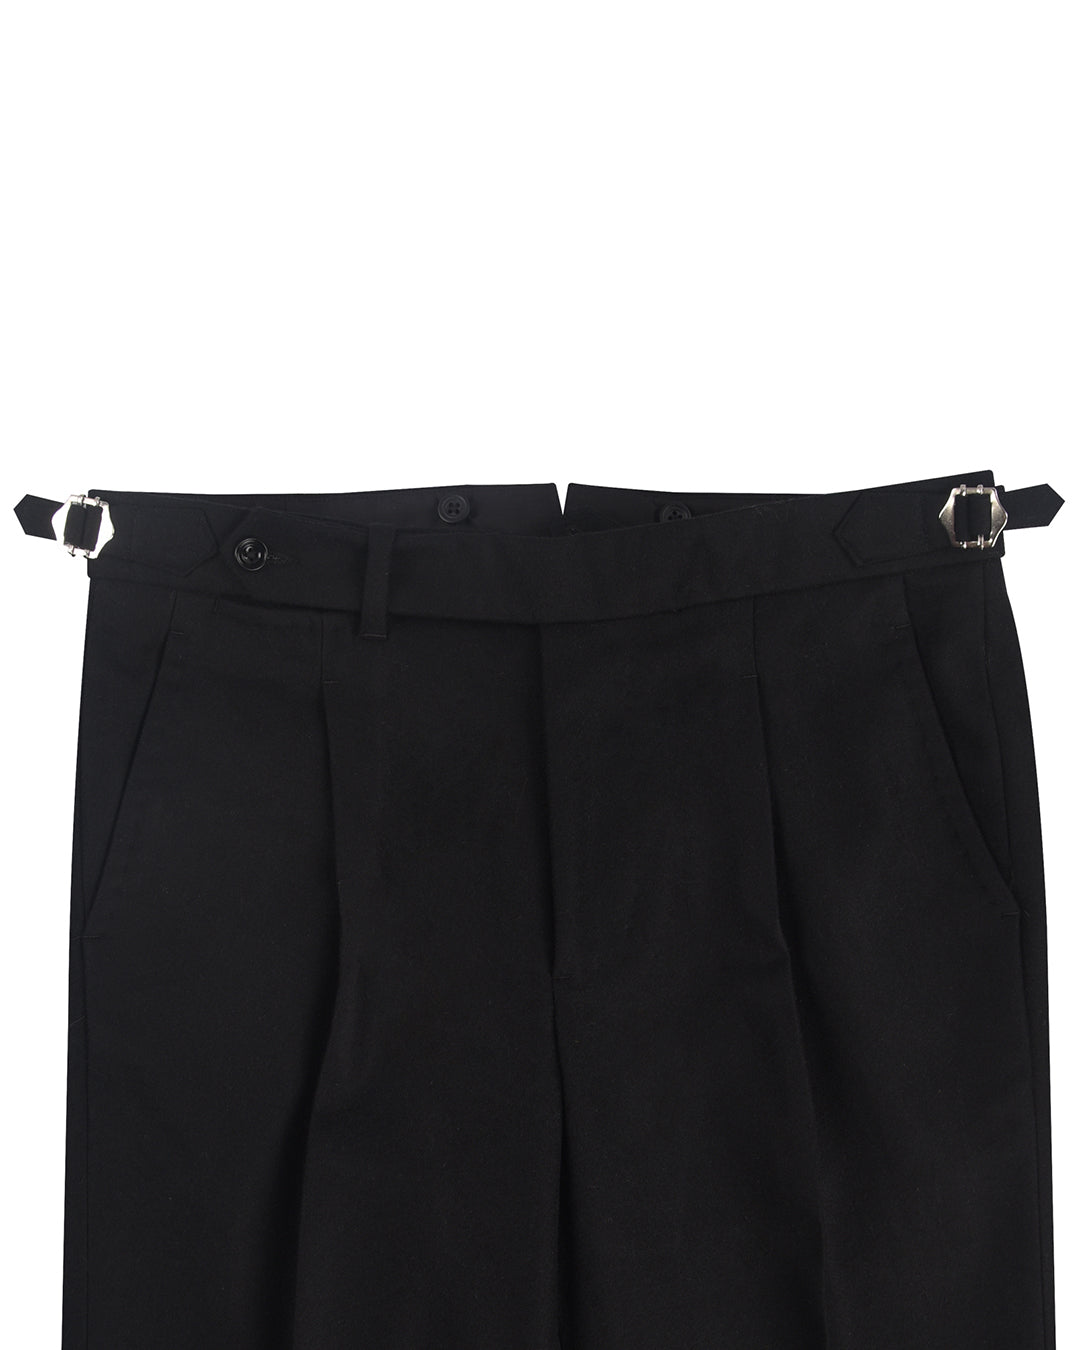 Minnis Flannel: Black Twill Pants